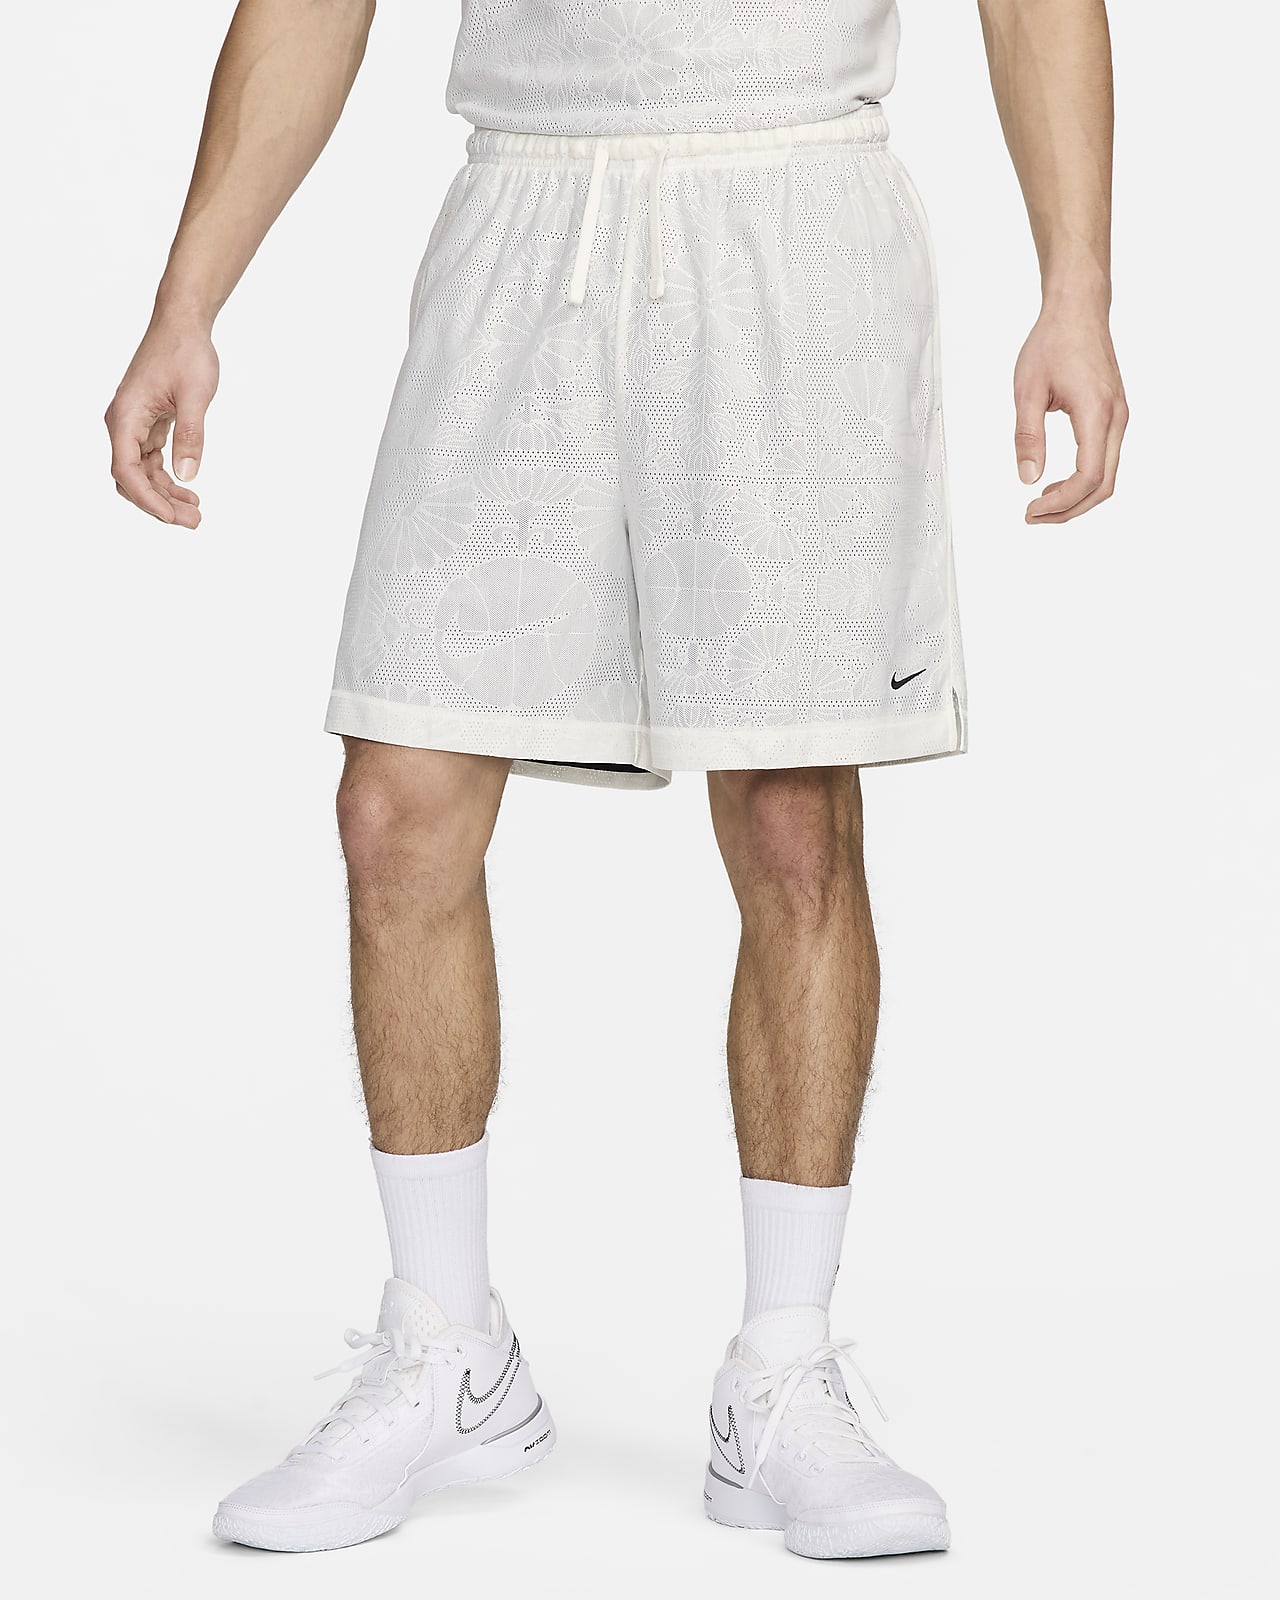 Nike Standard Issue Dri-FIT 男子速干双面穿篮球短裤